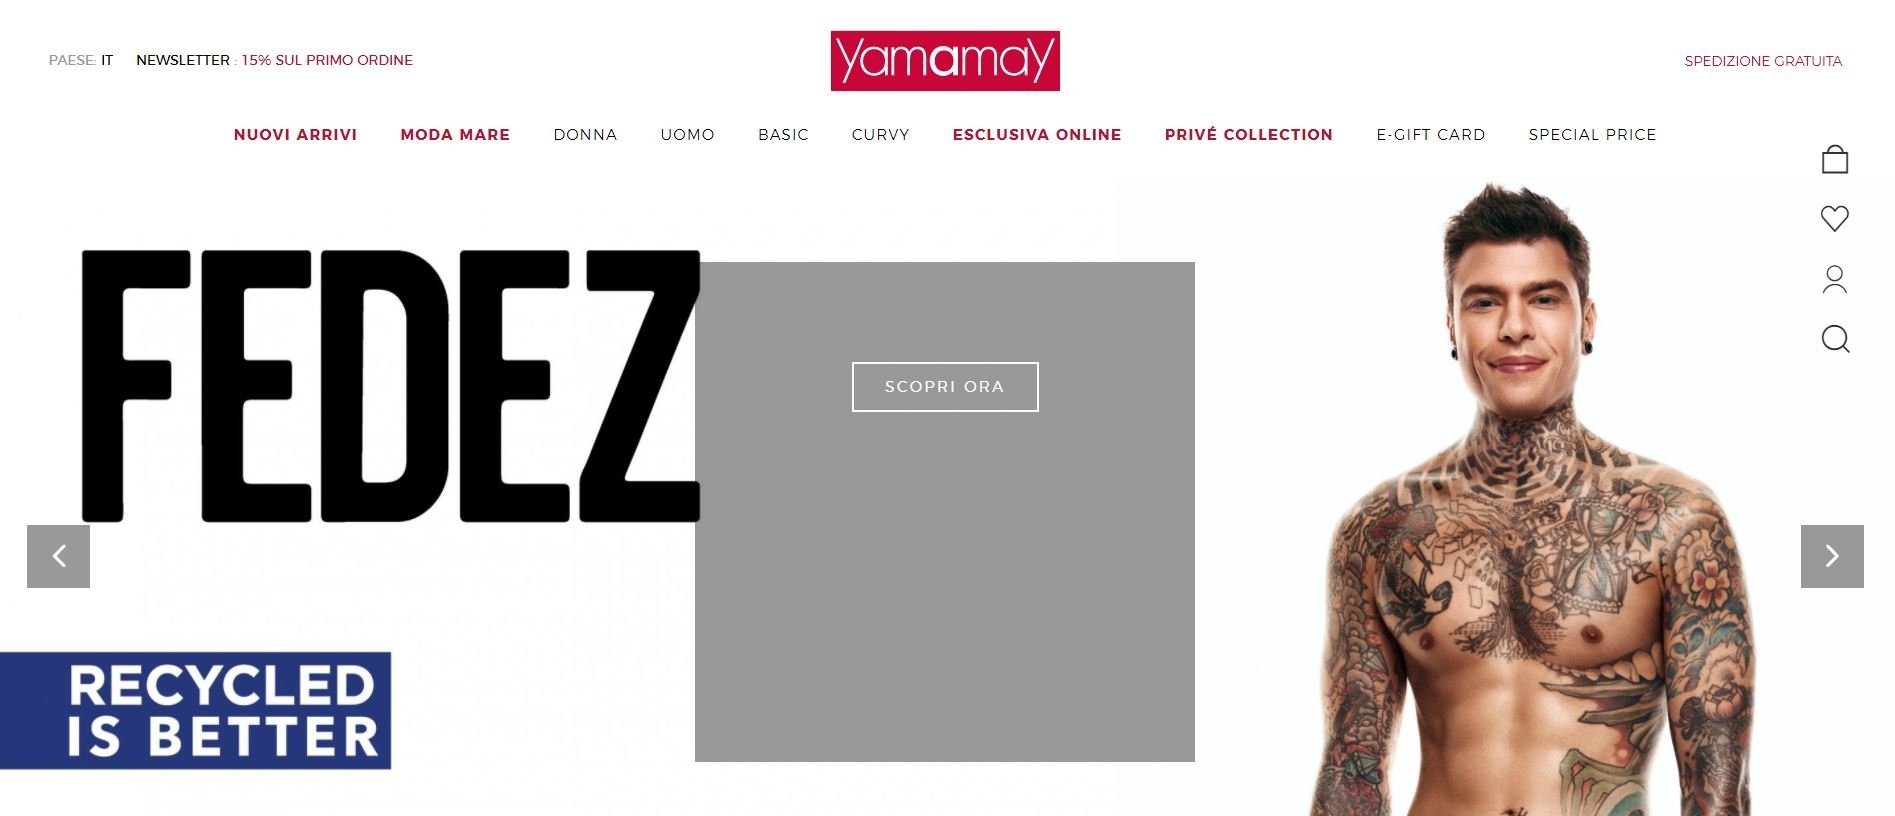 Yammay купить онлайн с доставкой в Казахстан - Meest Shopping - 2